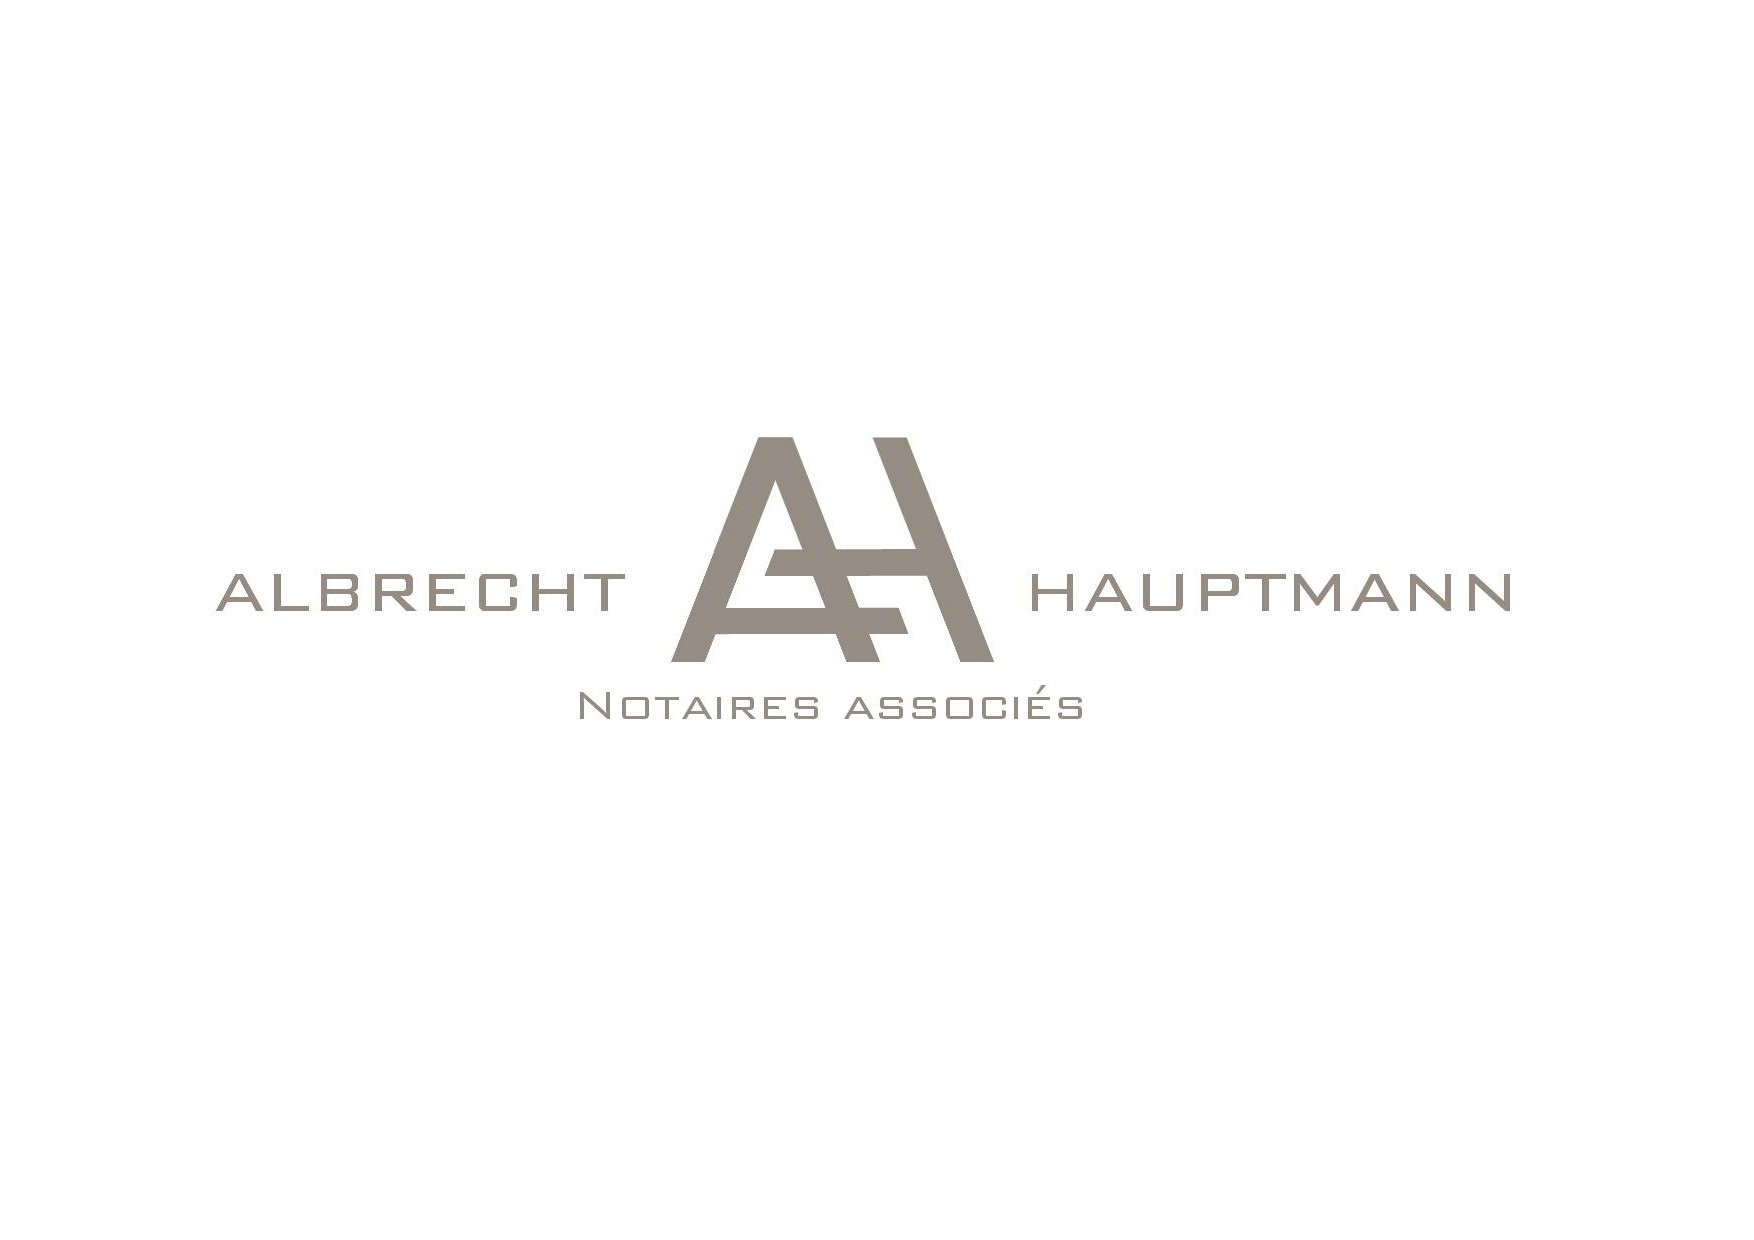 Albrecht & Hauptmann